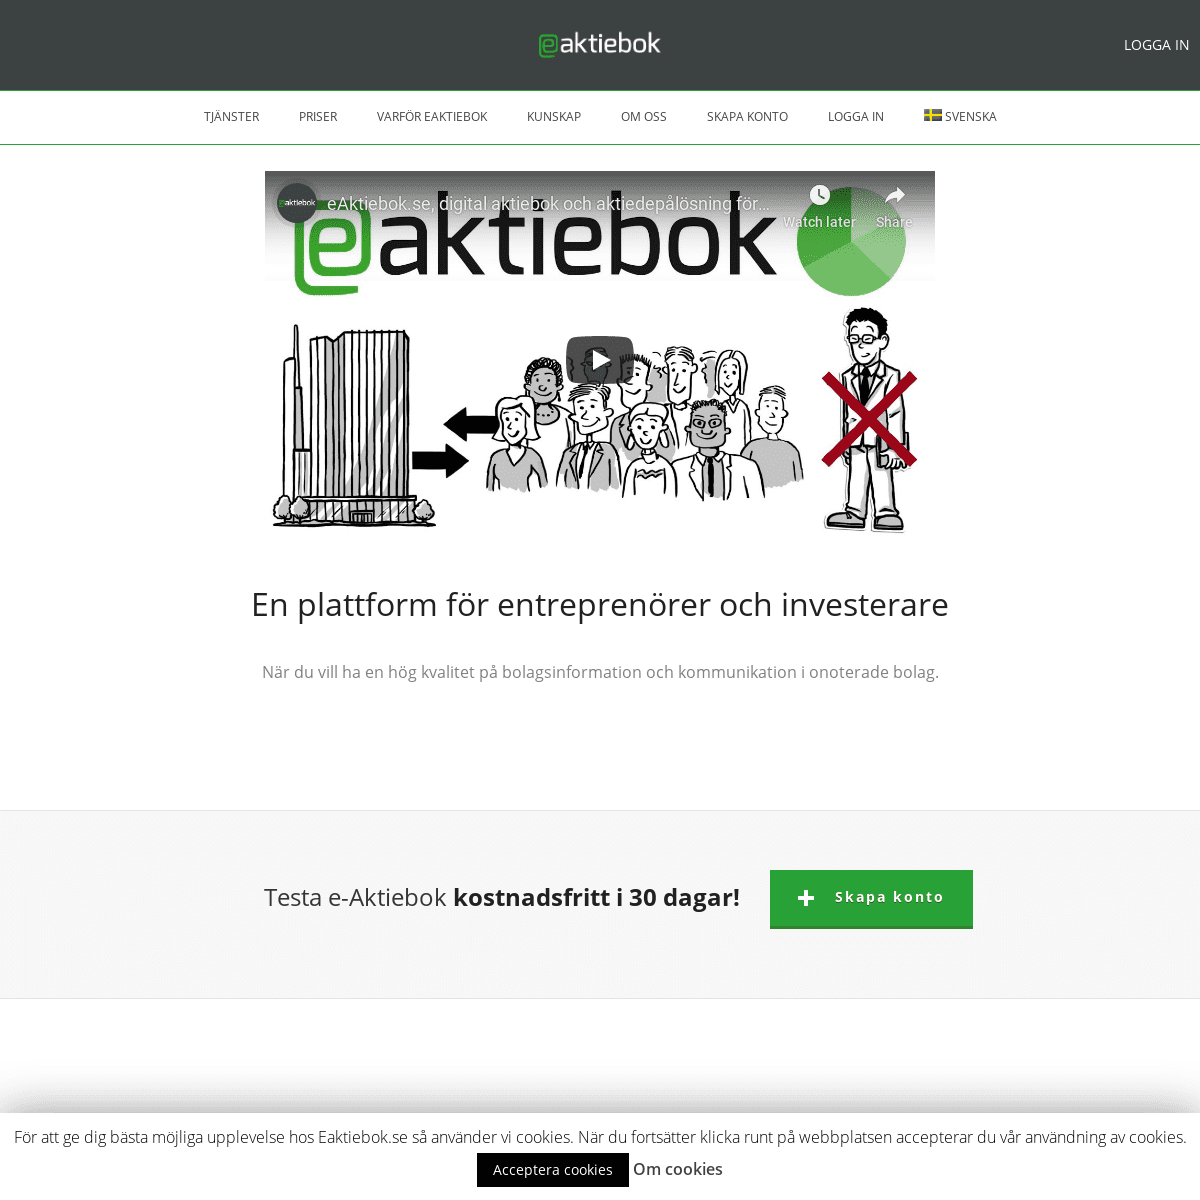 A complete backup of eaktiebok.se